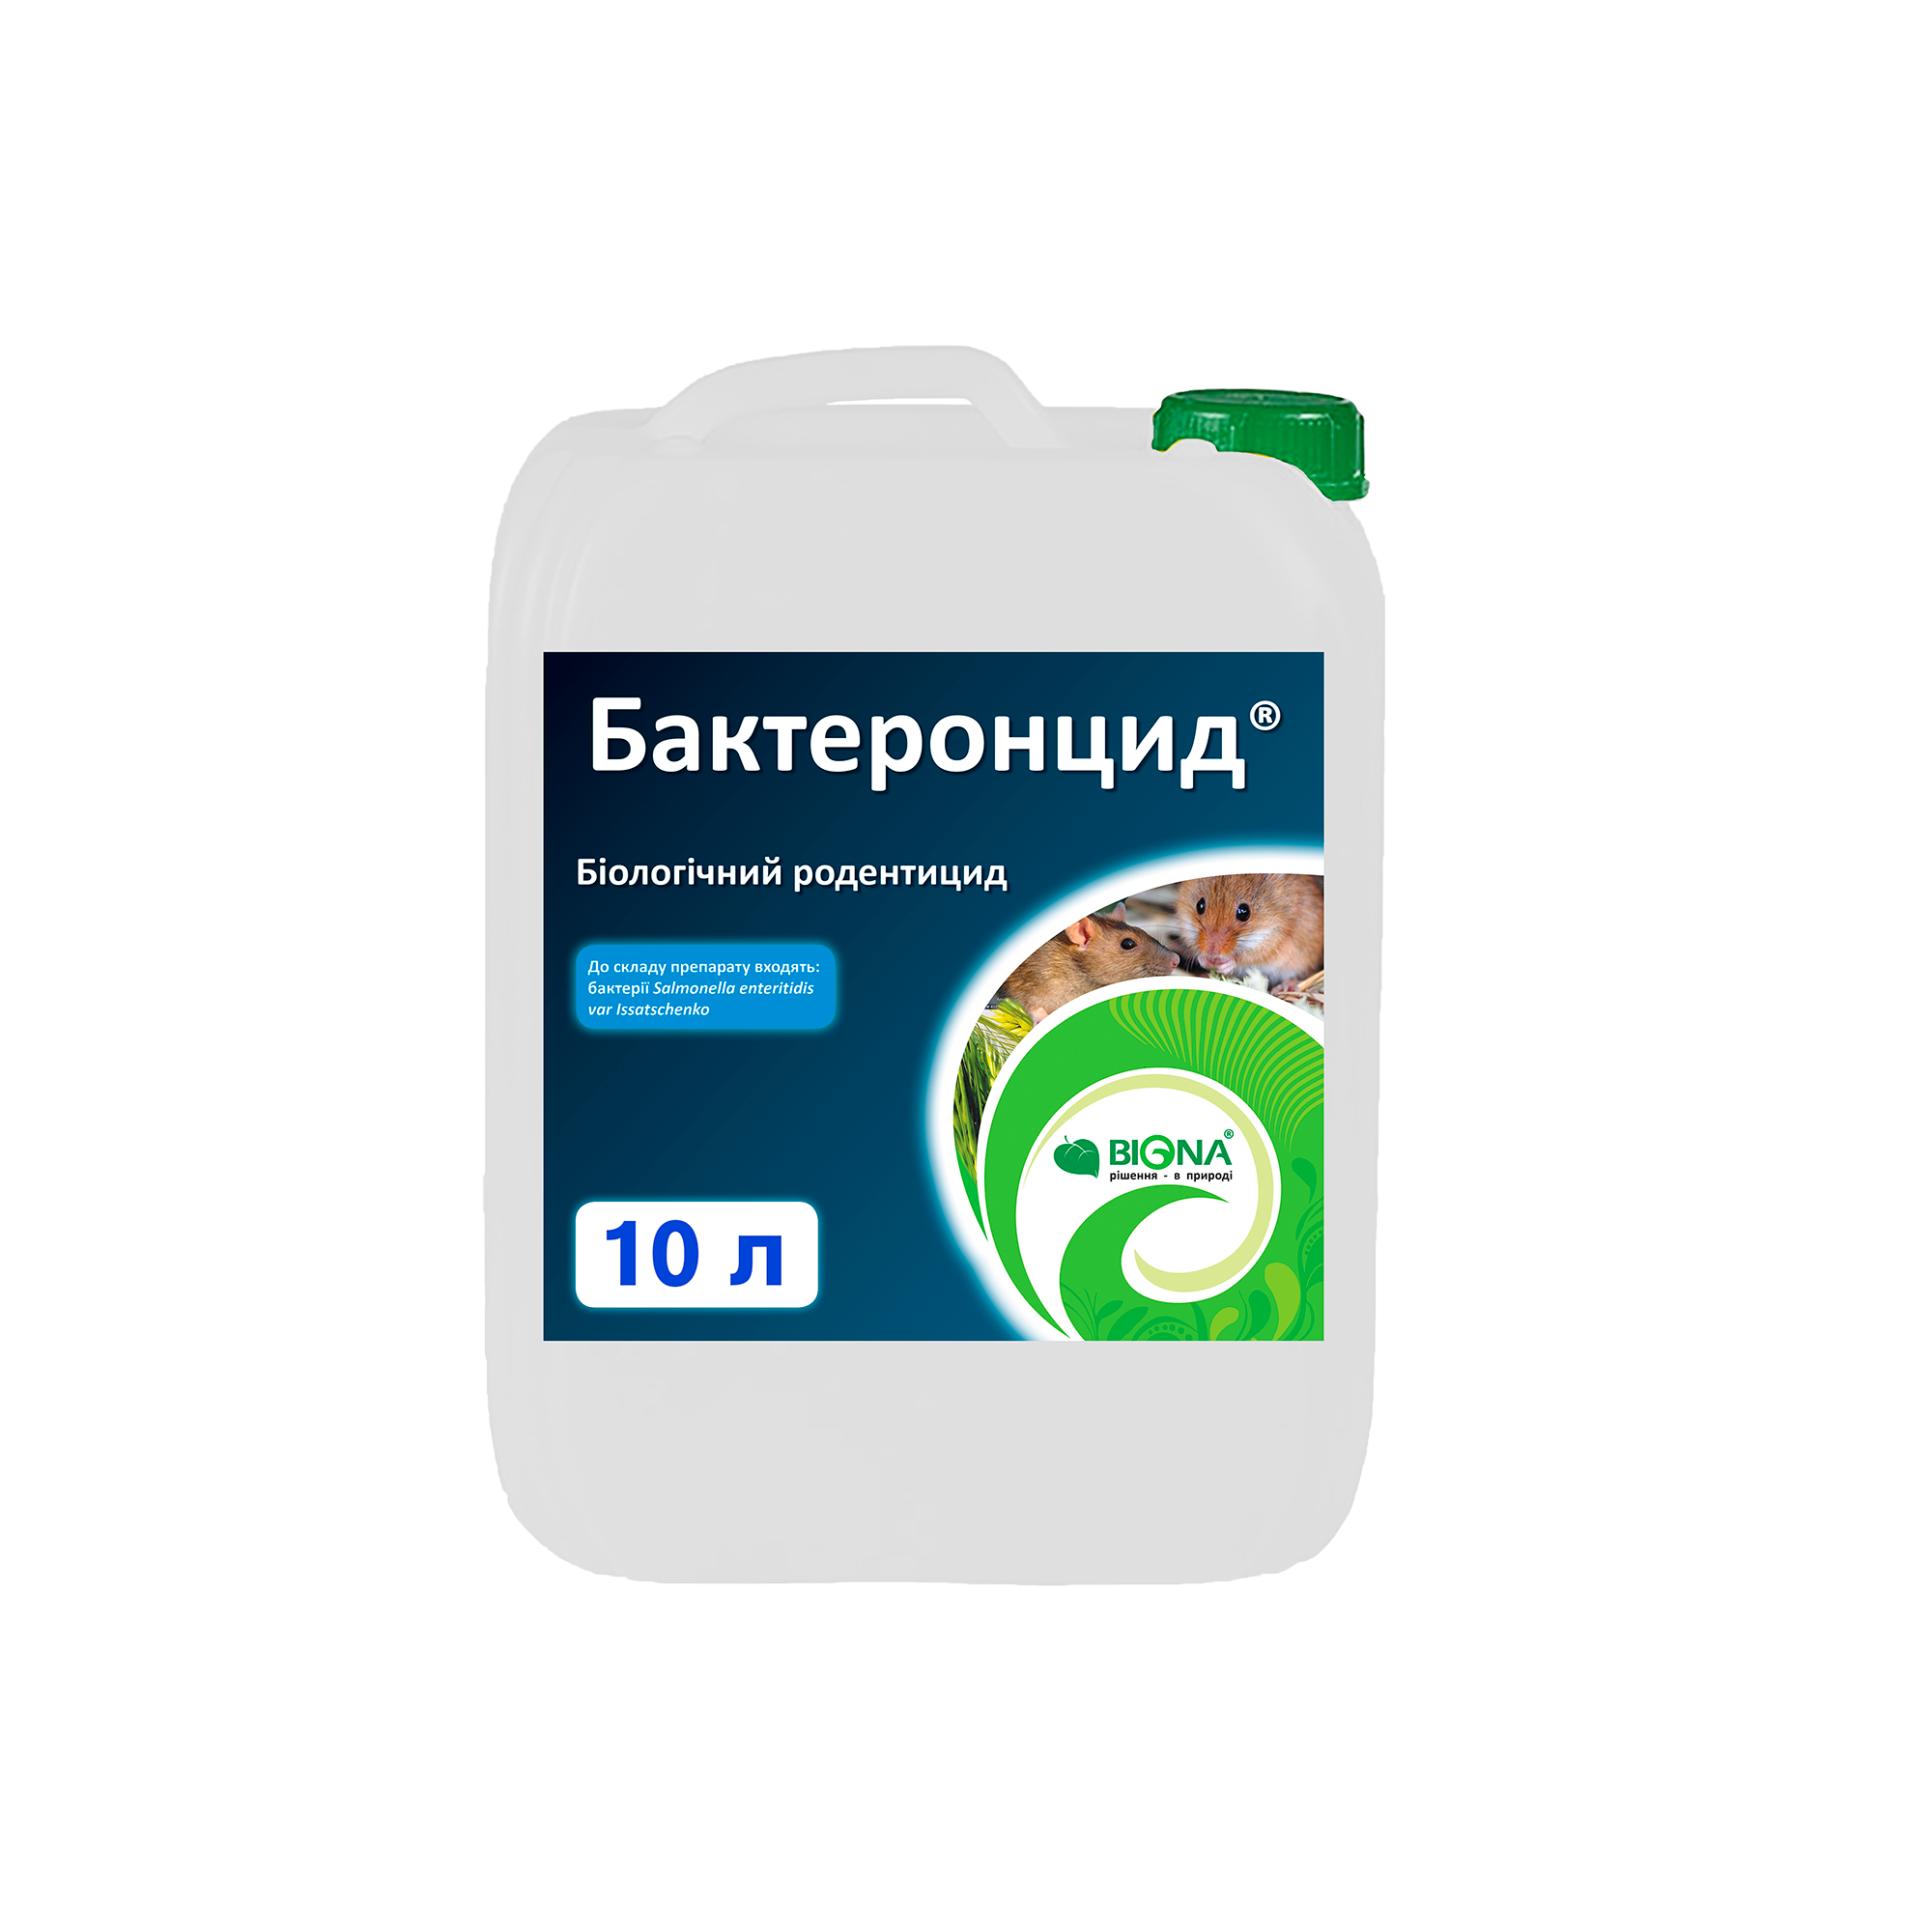 Бактеронцид® гель – Біологічний родентицид для боротьби з гризунами – купити від виробника в Україні